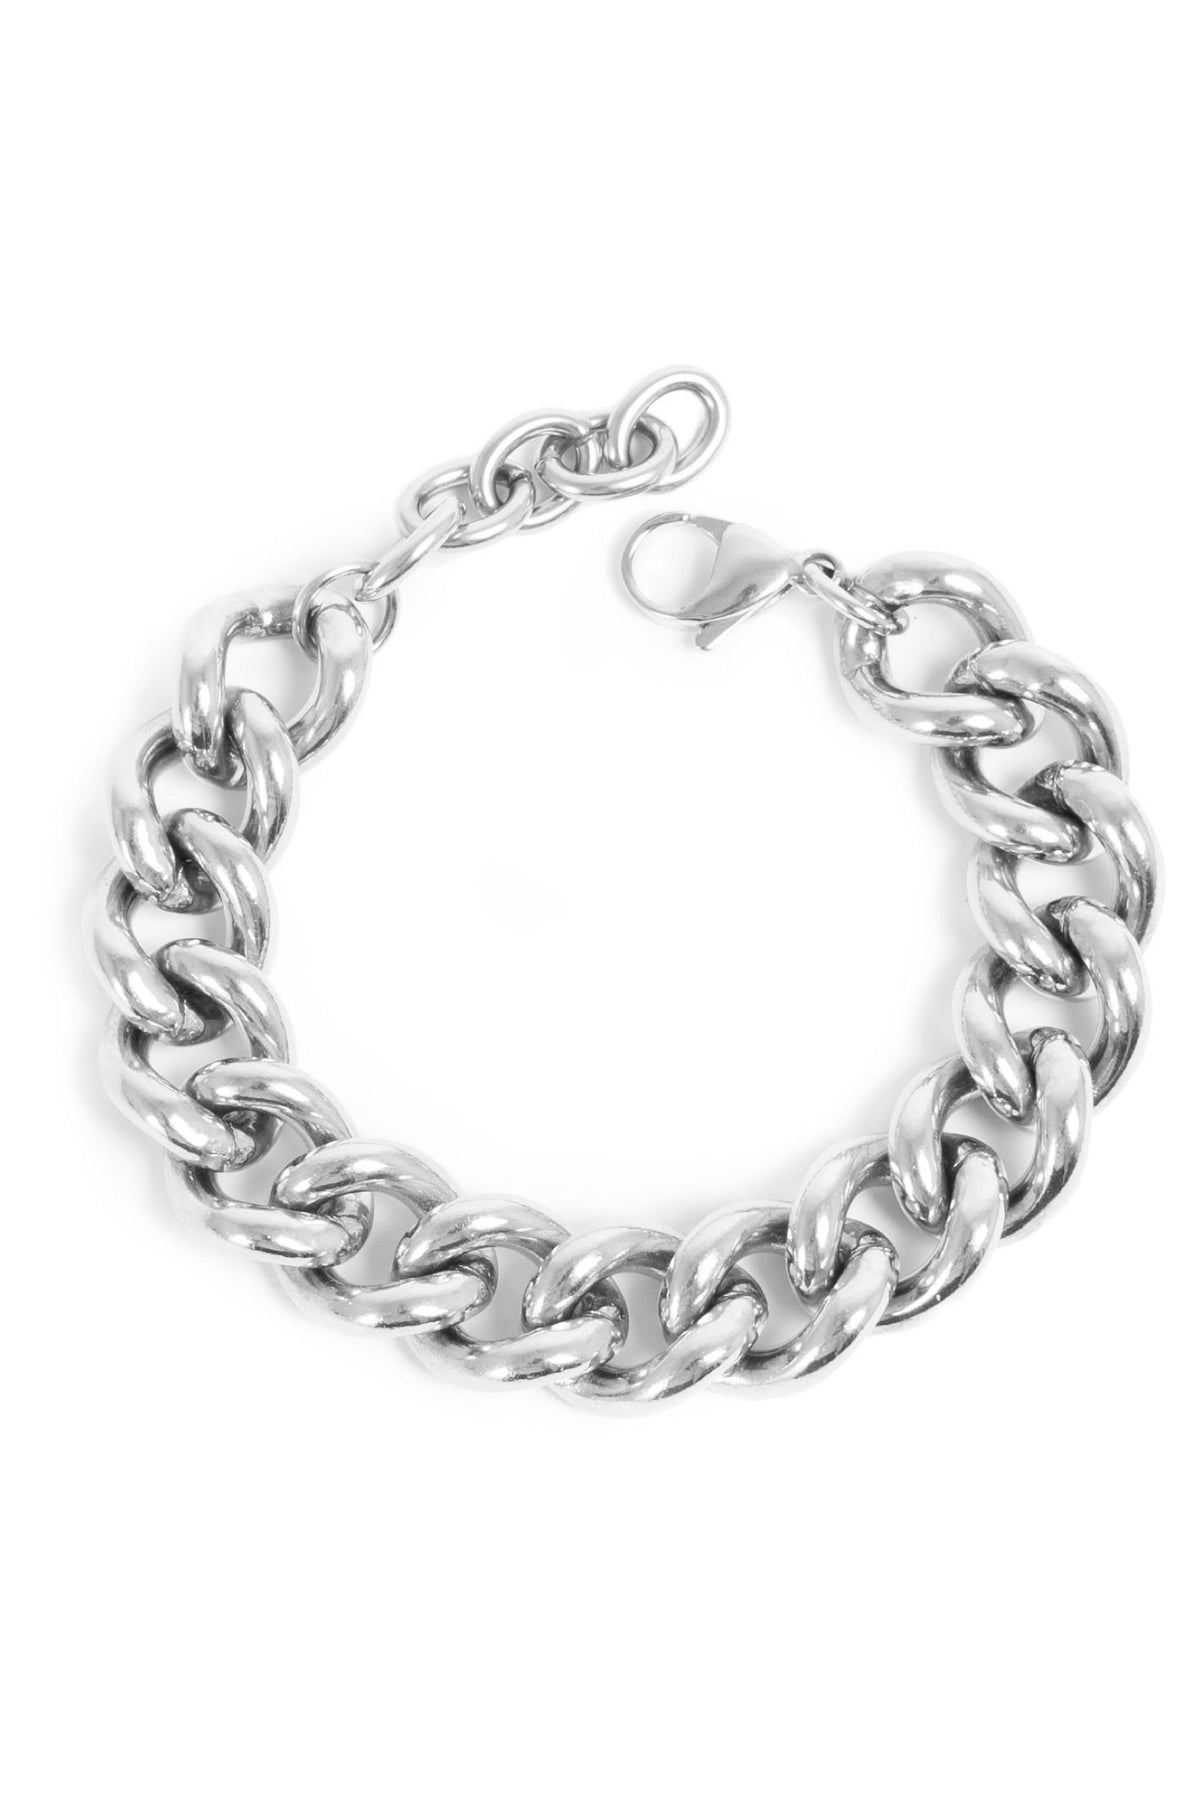 Bracelet Steel Unisex Armor Chain Silver